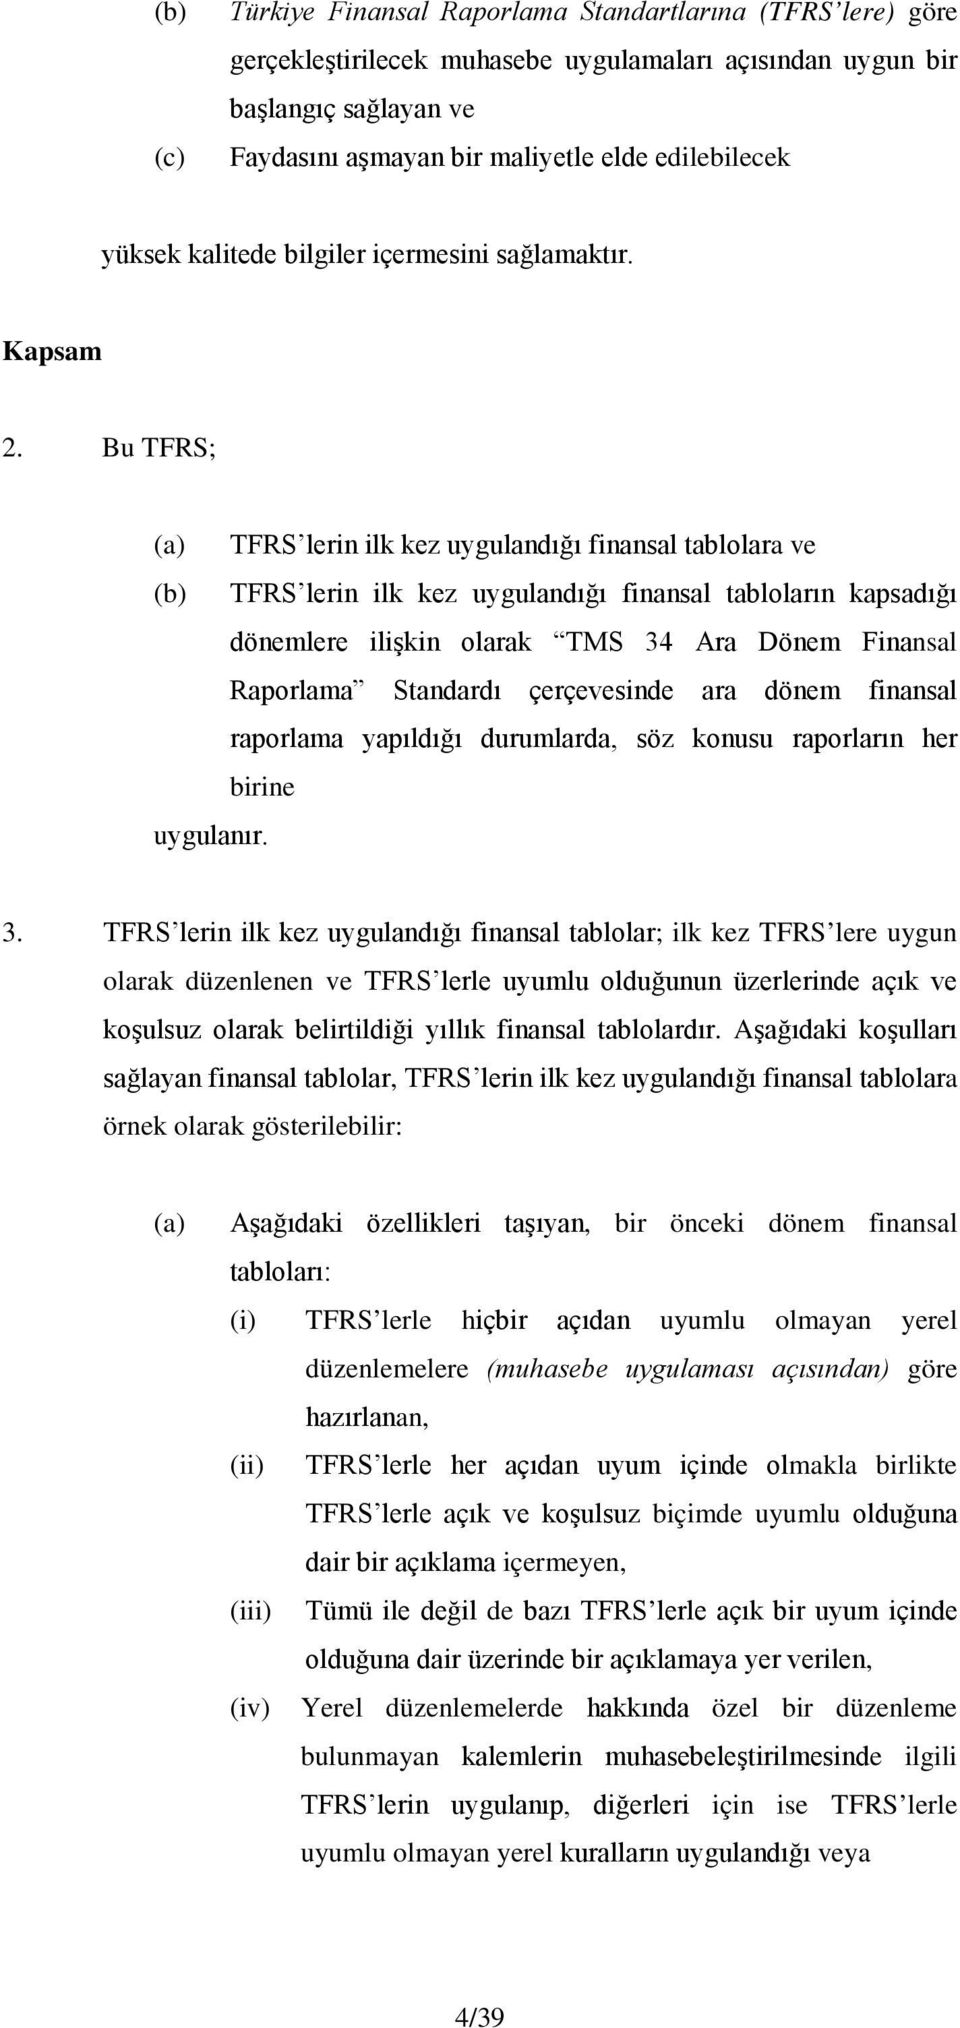 Bu TFRS; (a) TFRS lerin ilk kez uygulandığı finansal tablolara ve (b) TFRS lerin ilk kez uygulandığı finansal tabloların kapsadığı dönemlere ilişkin olarak TMS 34 Ara Dönem Finansal Raporlama